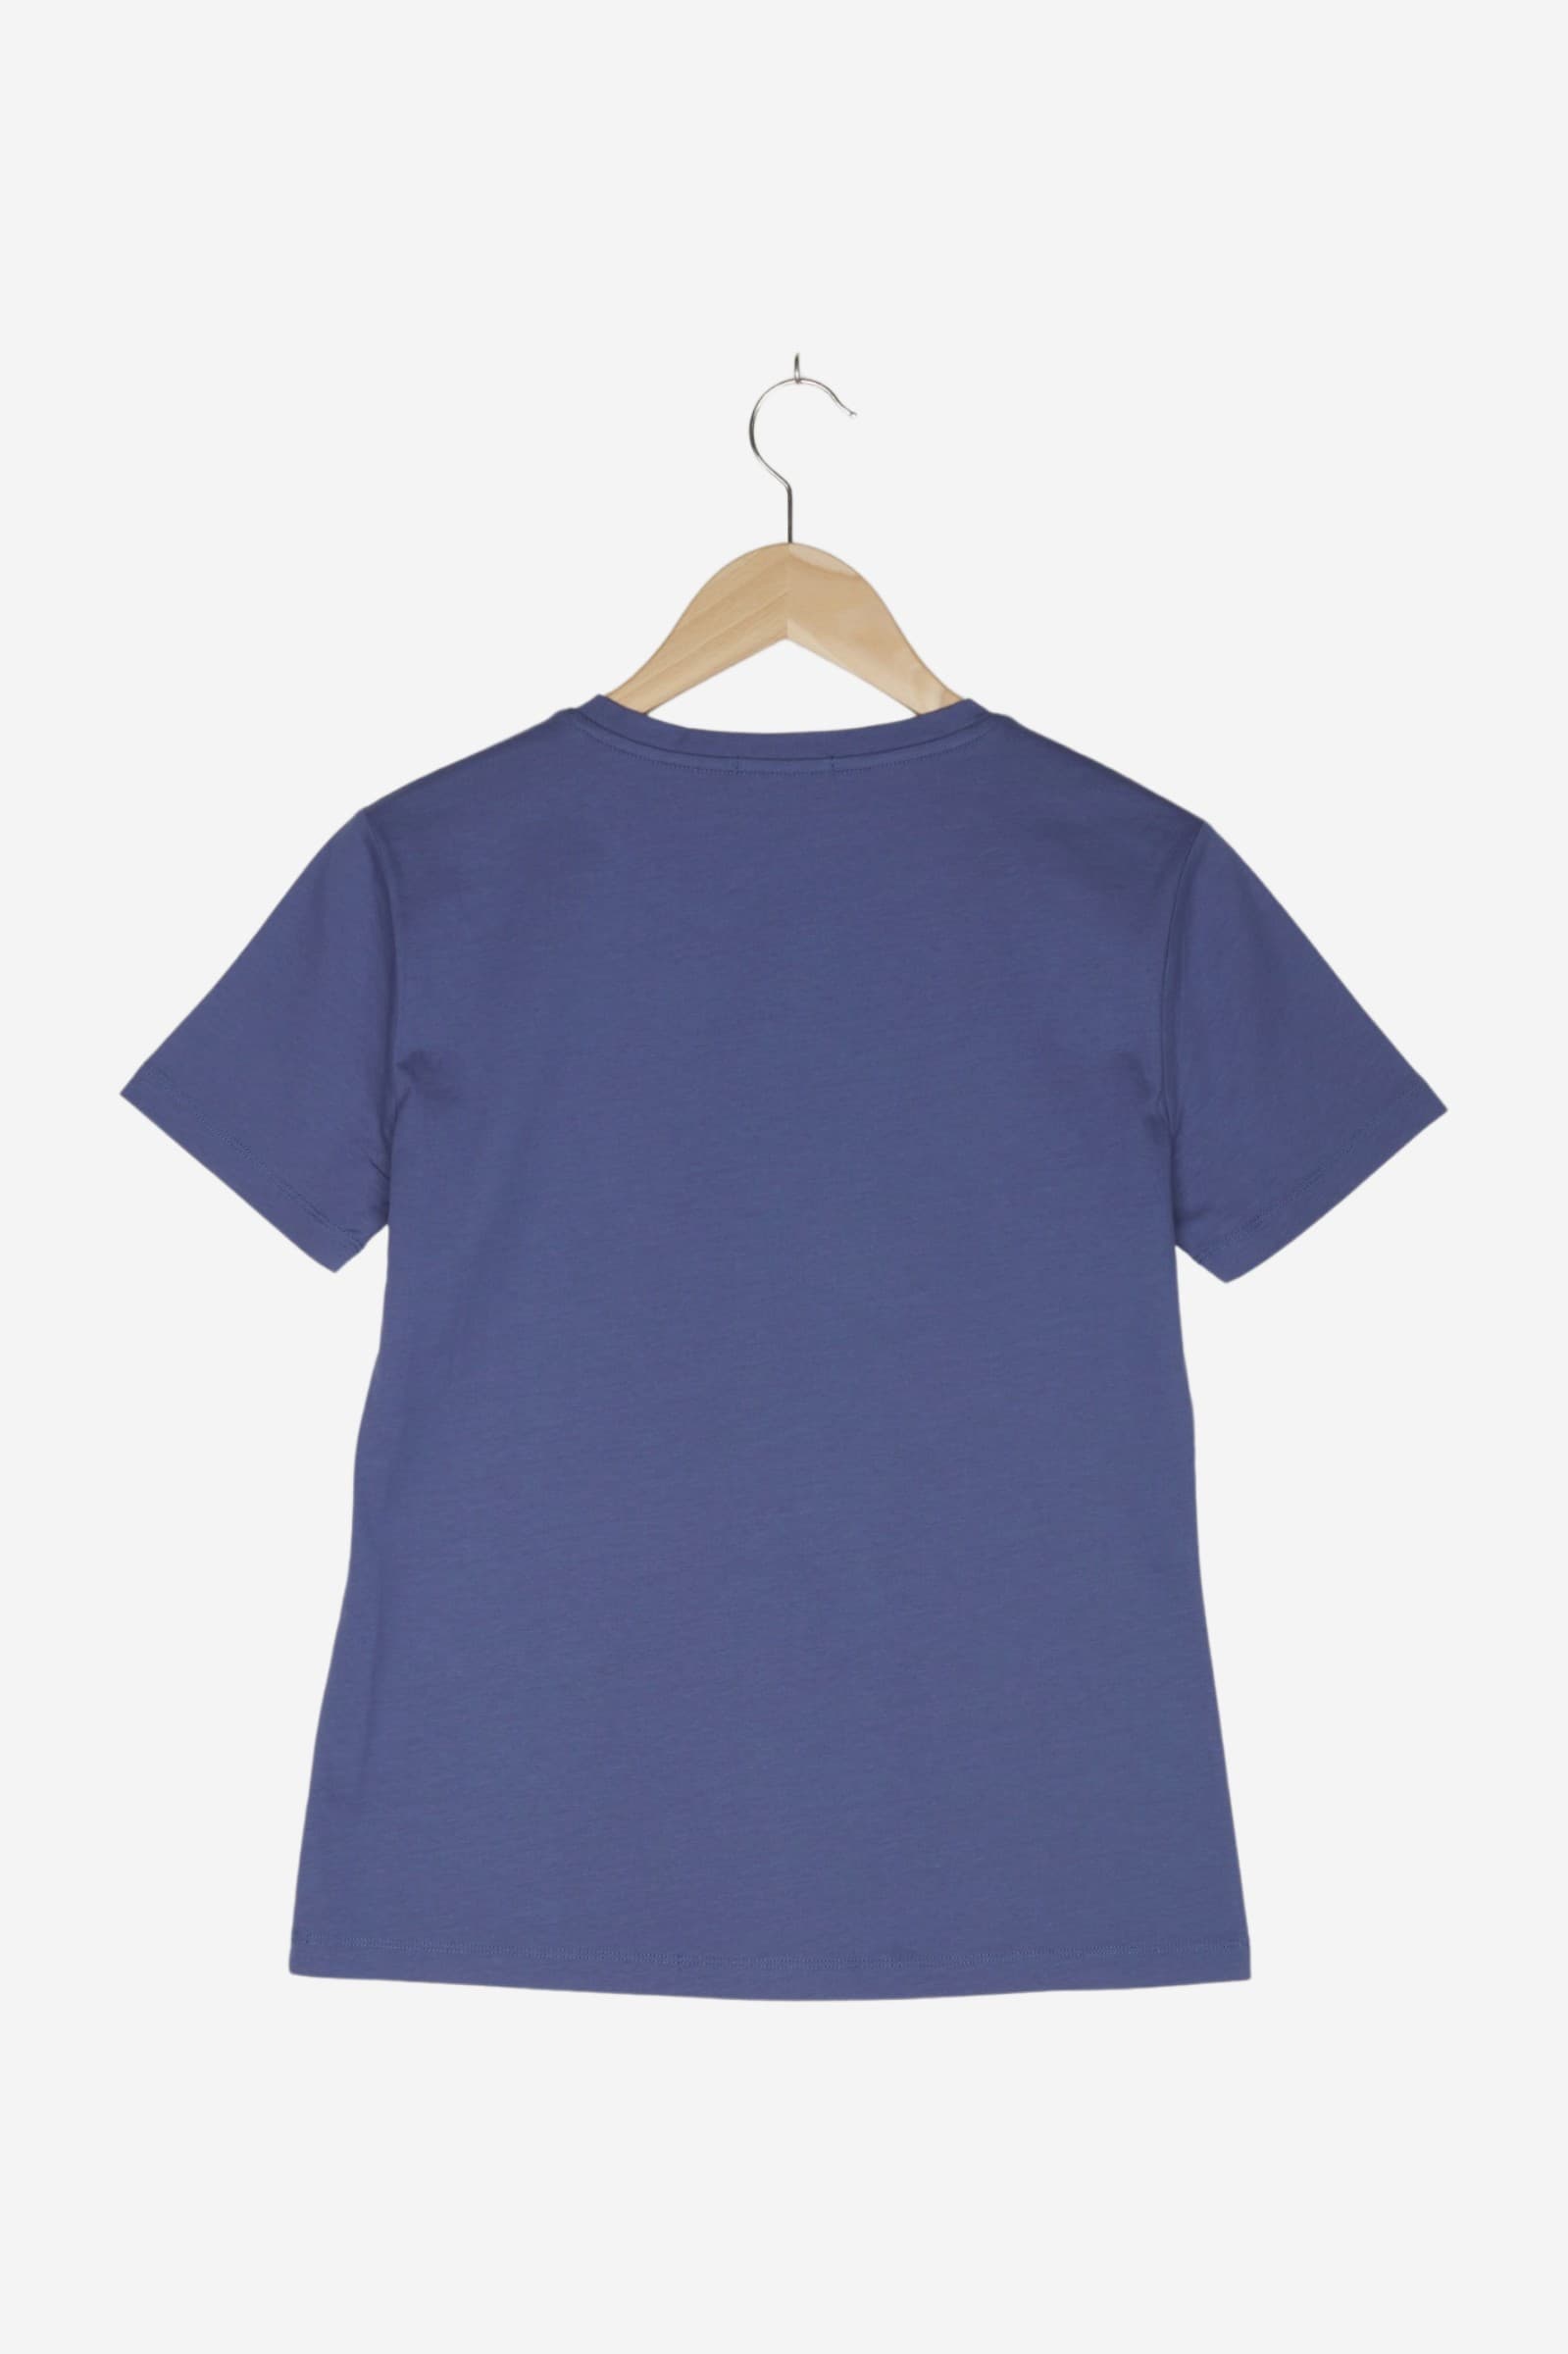 women Tops & T-Shirts Women / Shirts / T-Shirt Blue